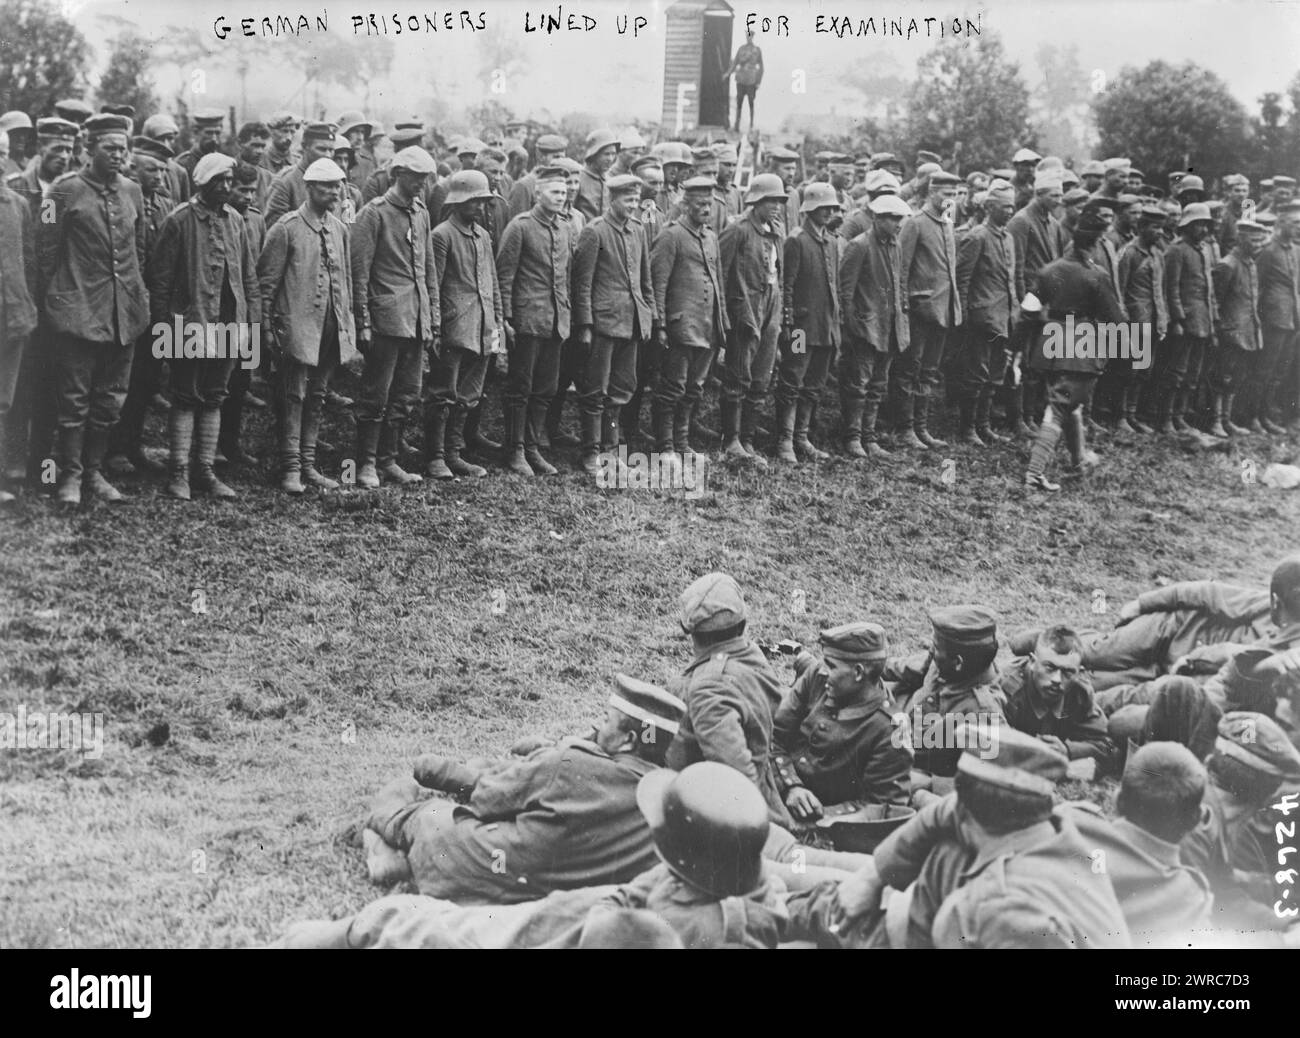 Prisonniers allemands alignés pour l'examen, photographie montre des prisonniers allemands pris lors de la bataille de Messines, 8 juin 1917 pendant la première Guerre mondiale, 1917 juin 8, Guerre mondiale, 1914-1918, négatifs en verre, 1 négatif : verre Banque D'Images